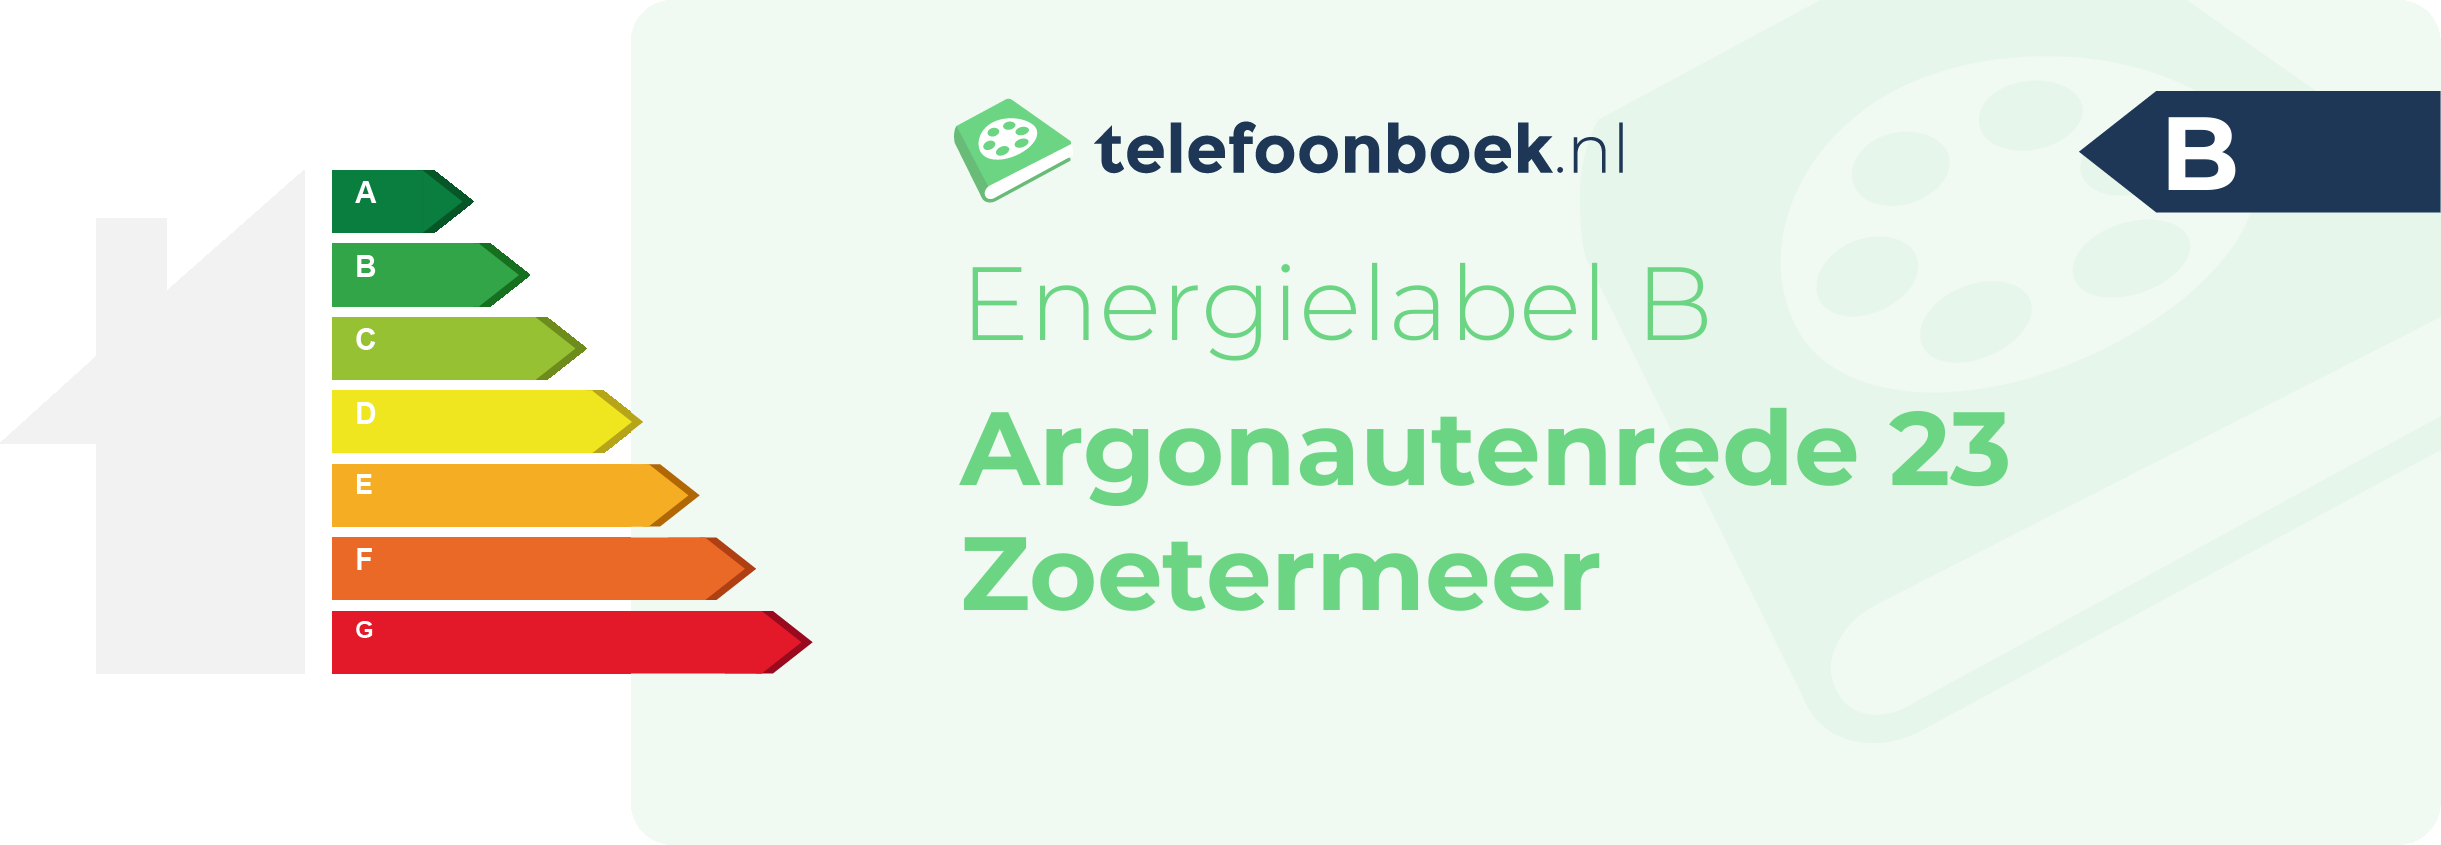 Energielabel Argonautenrede 23 Zoetermeer